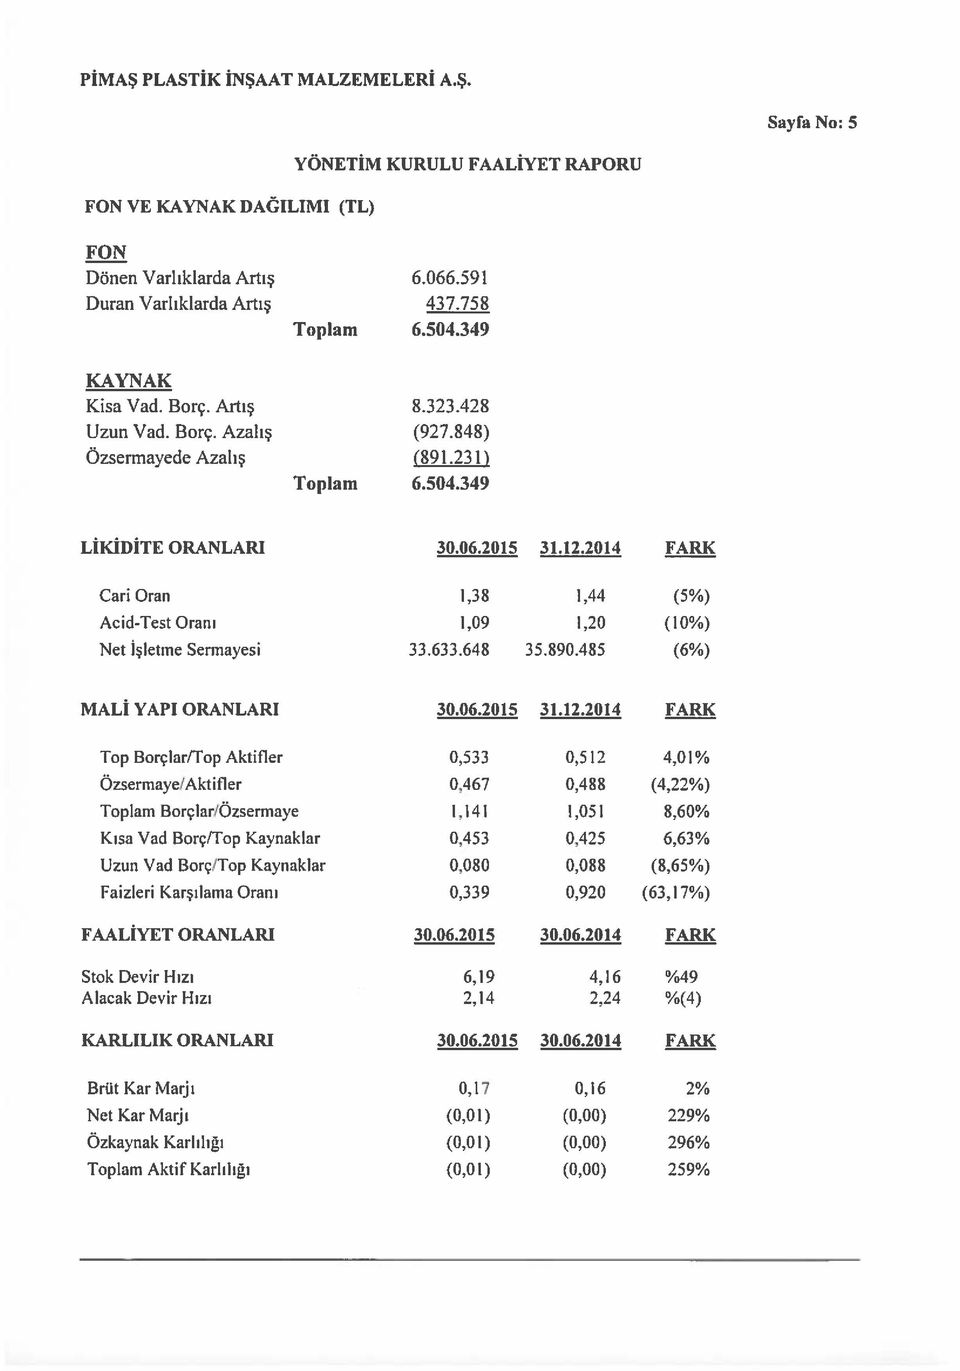 485 (6%) MALİ YAPI ORANLARI 30.06.2015 31.12.